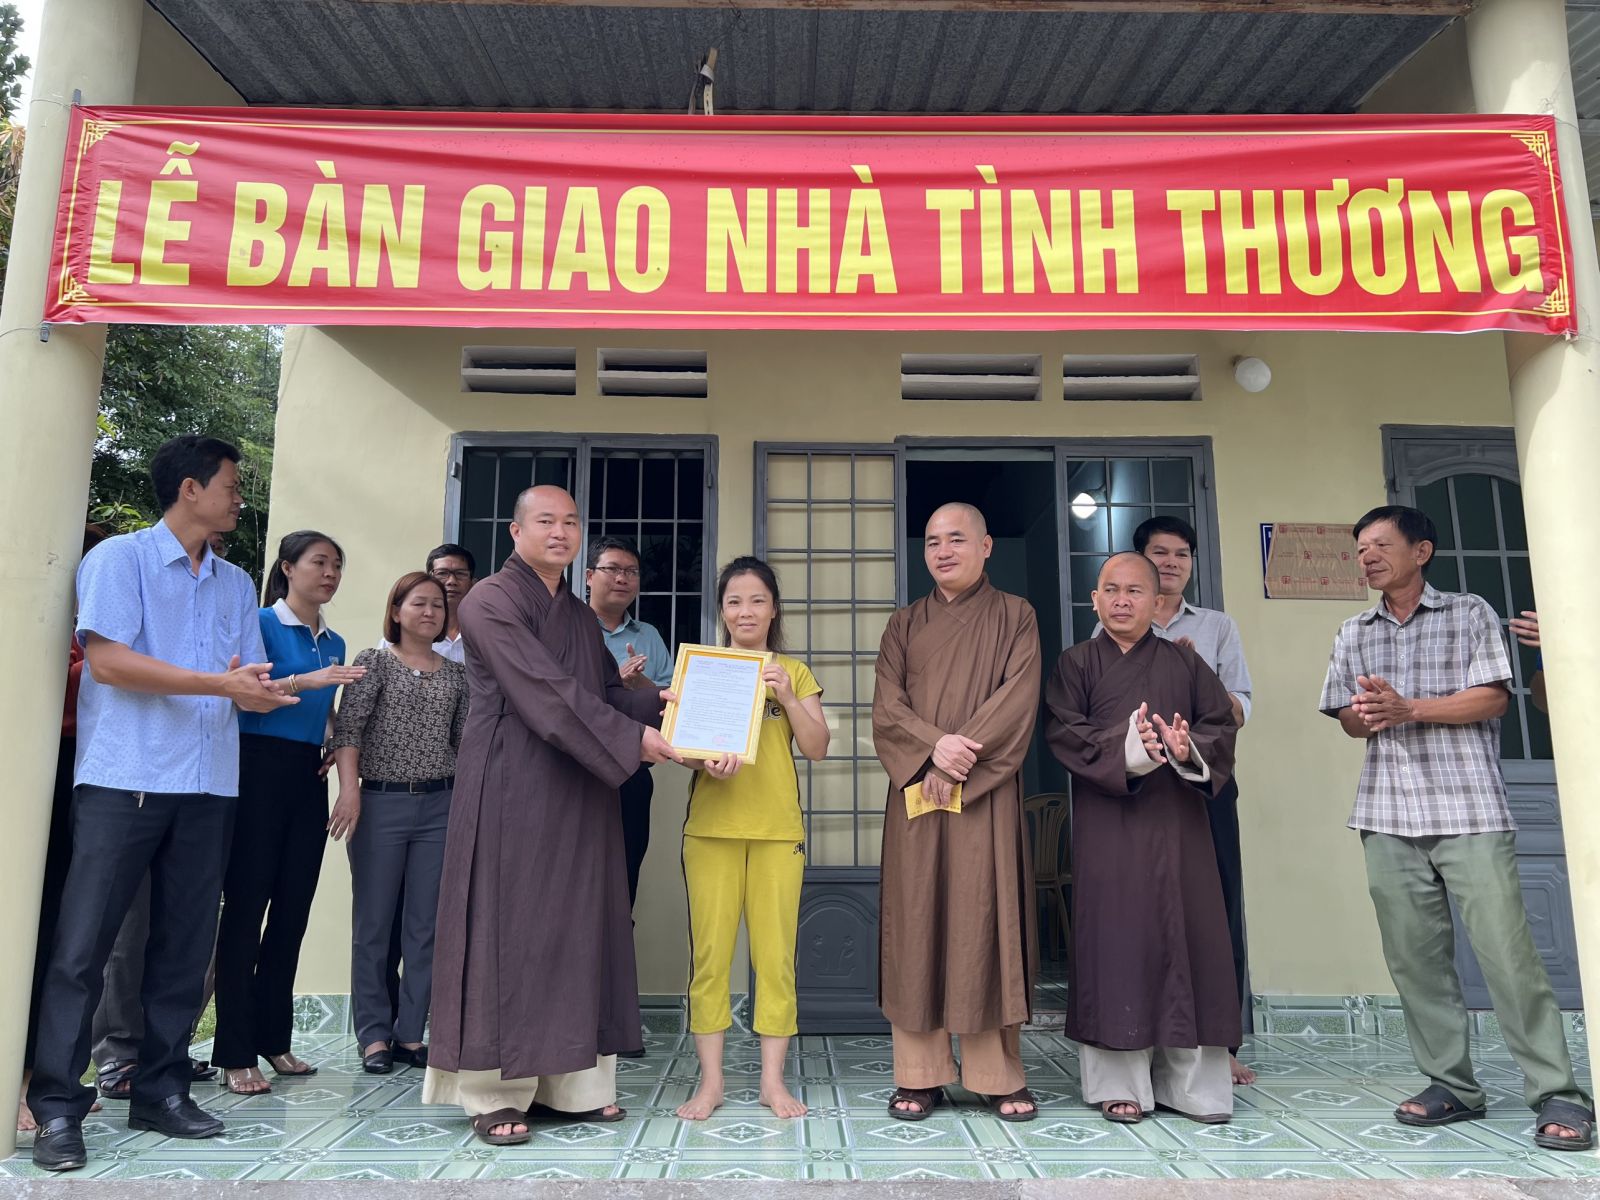 ĐỒNG NAI: Ban Trị Sự huyện Xuân Lộc trao tặng nhà tình thương cho hộ nghèo tại xã Suối cát, huyện Xuân Lộc